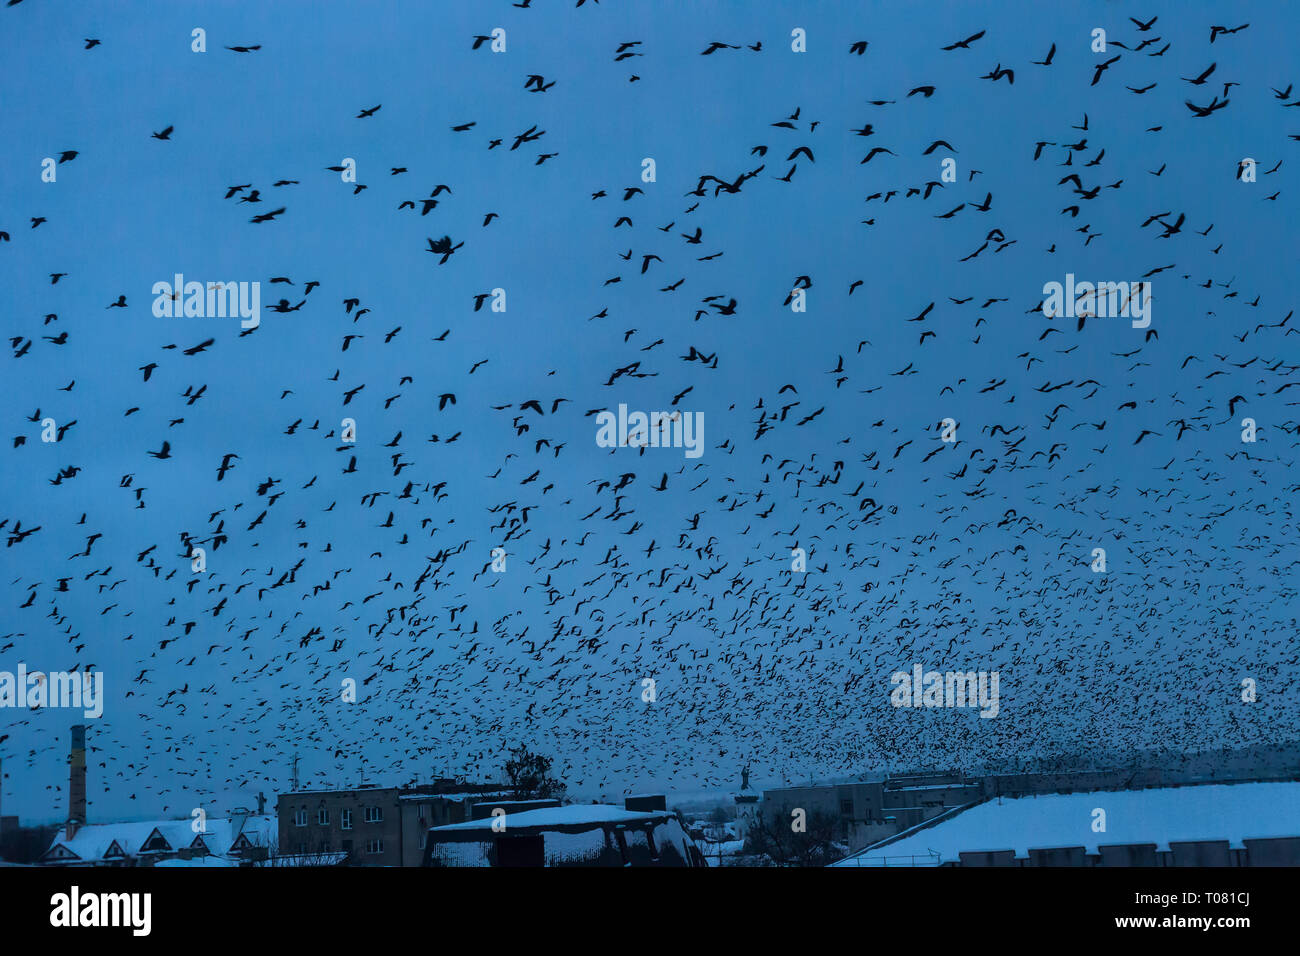 Beaucoup d'oiseaux silhouettes noires volant dans dark blue sky over night city, Blue Hour. Volée de corbeaux voler, la liberté, concept paysage abstrait. Anima Banque D'Images